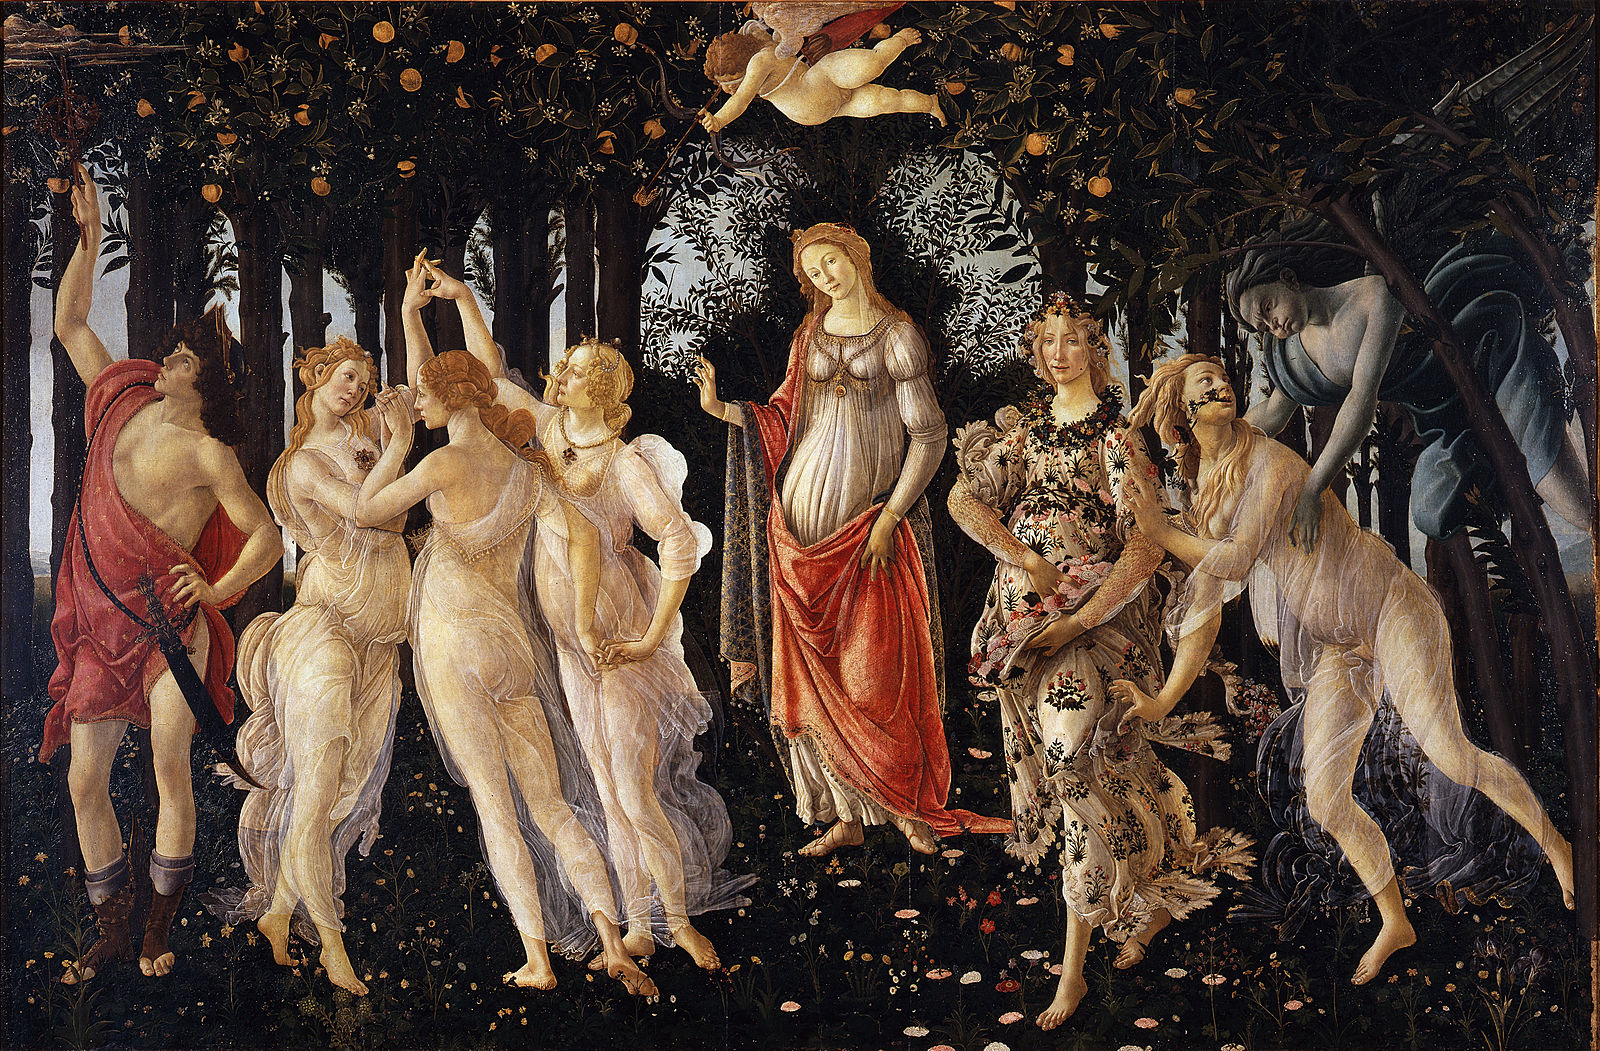 Primavera by Sandro Botticelli (1482)